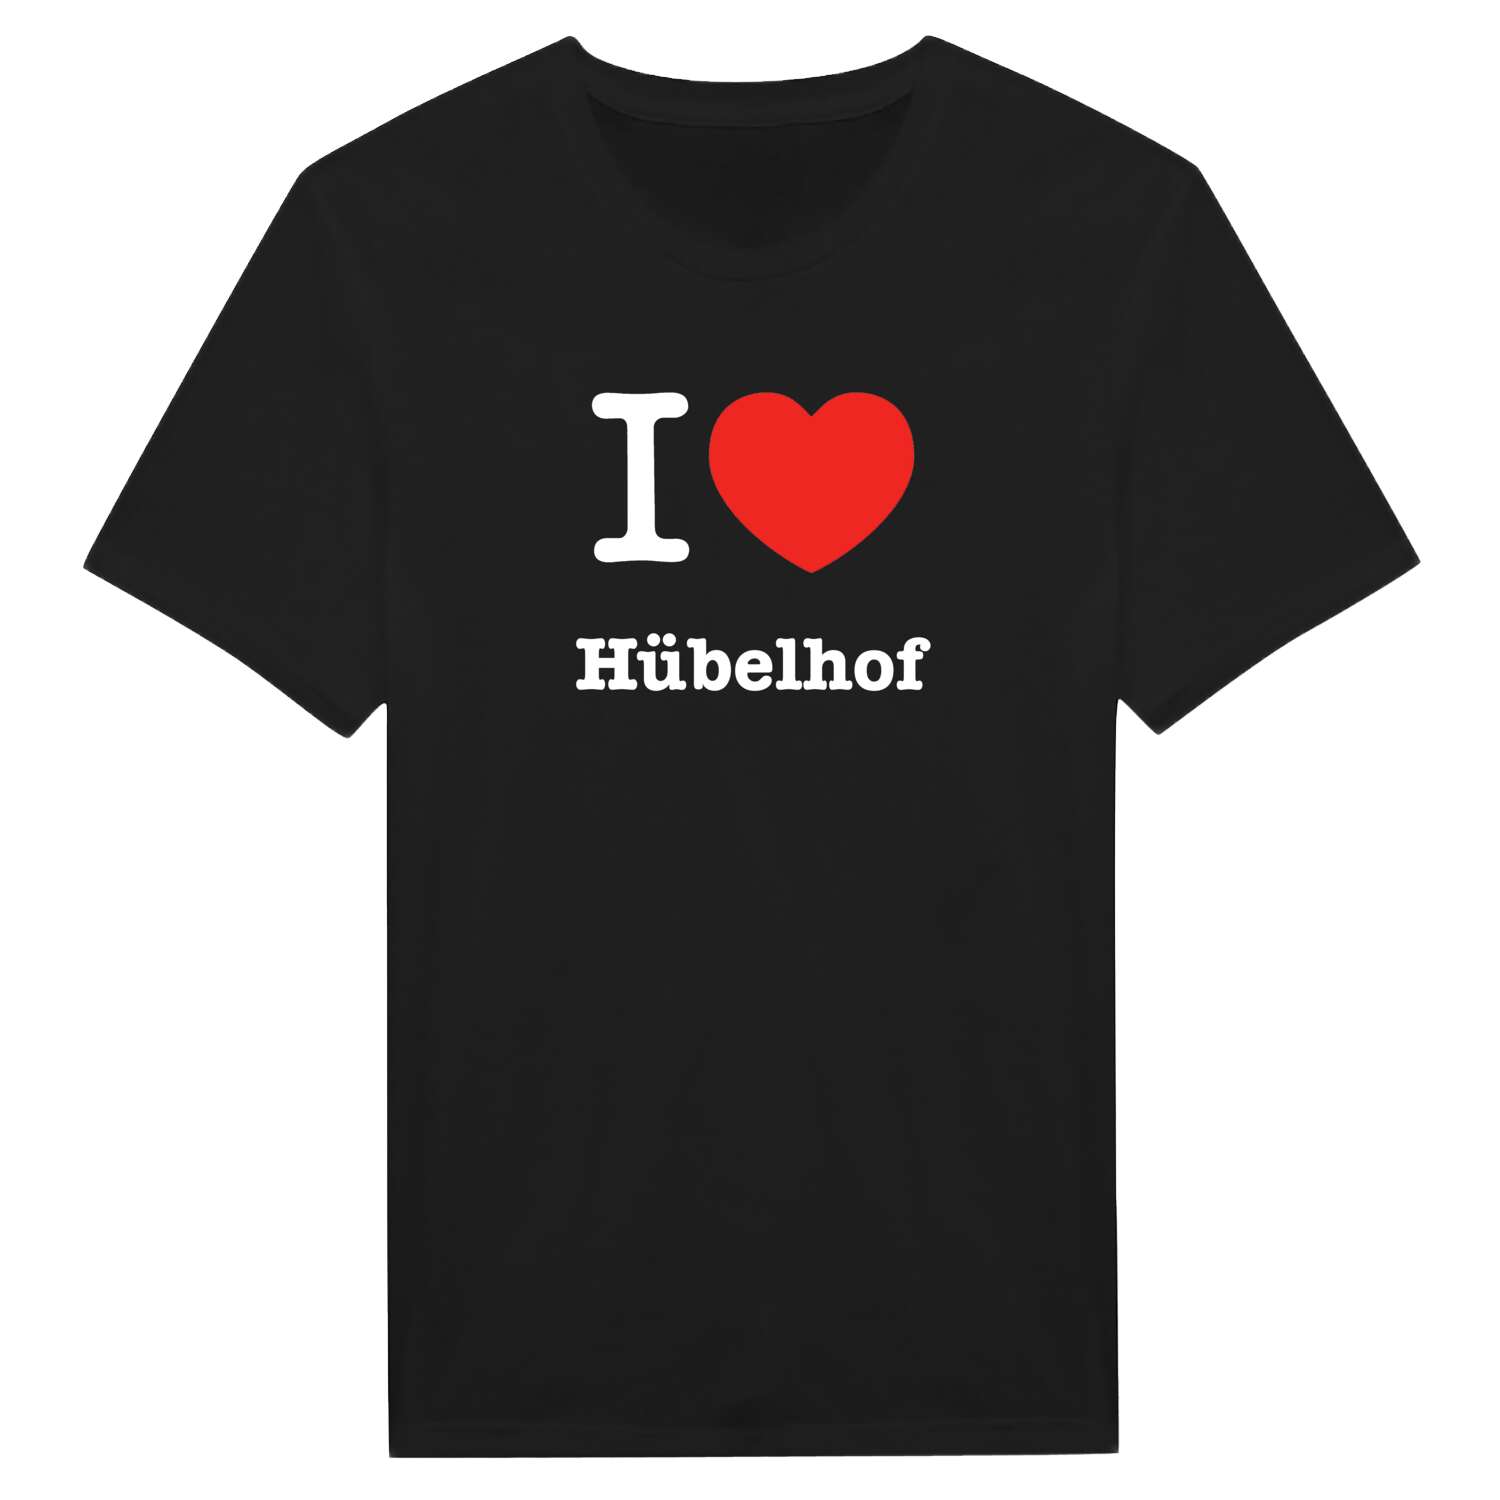 Hübelhof T-Shirt »I love«